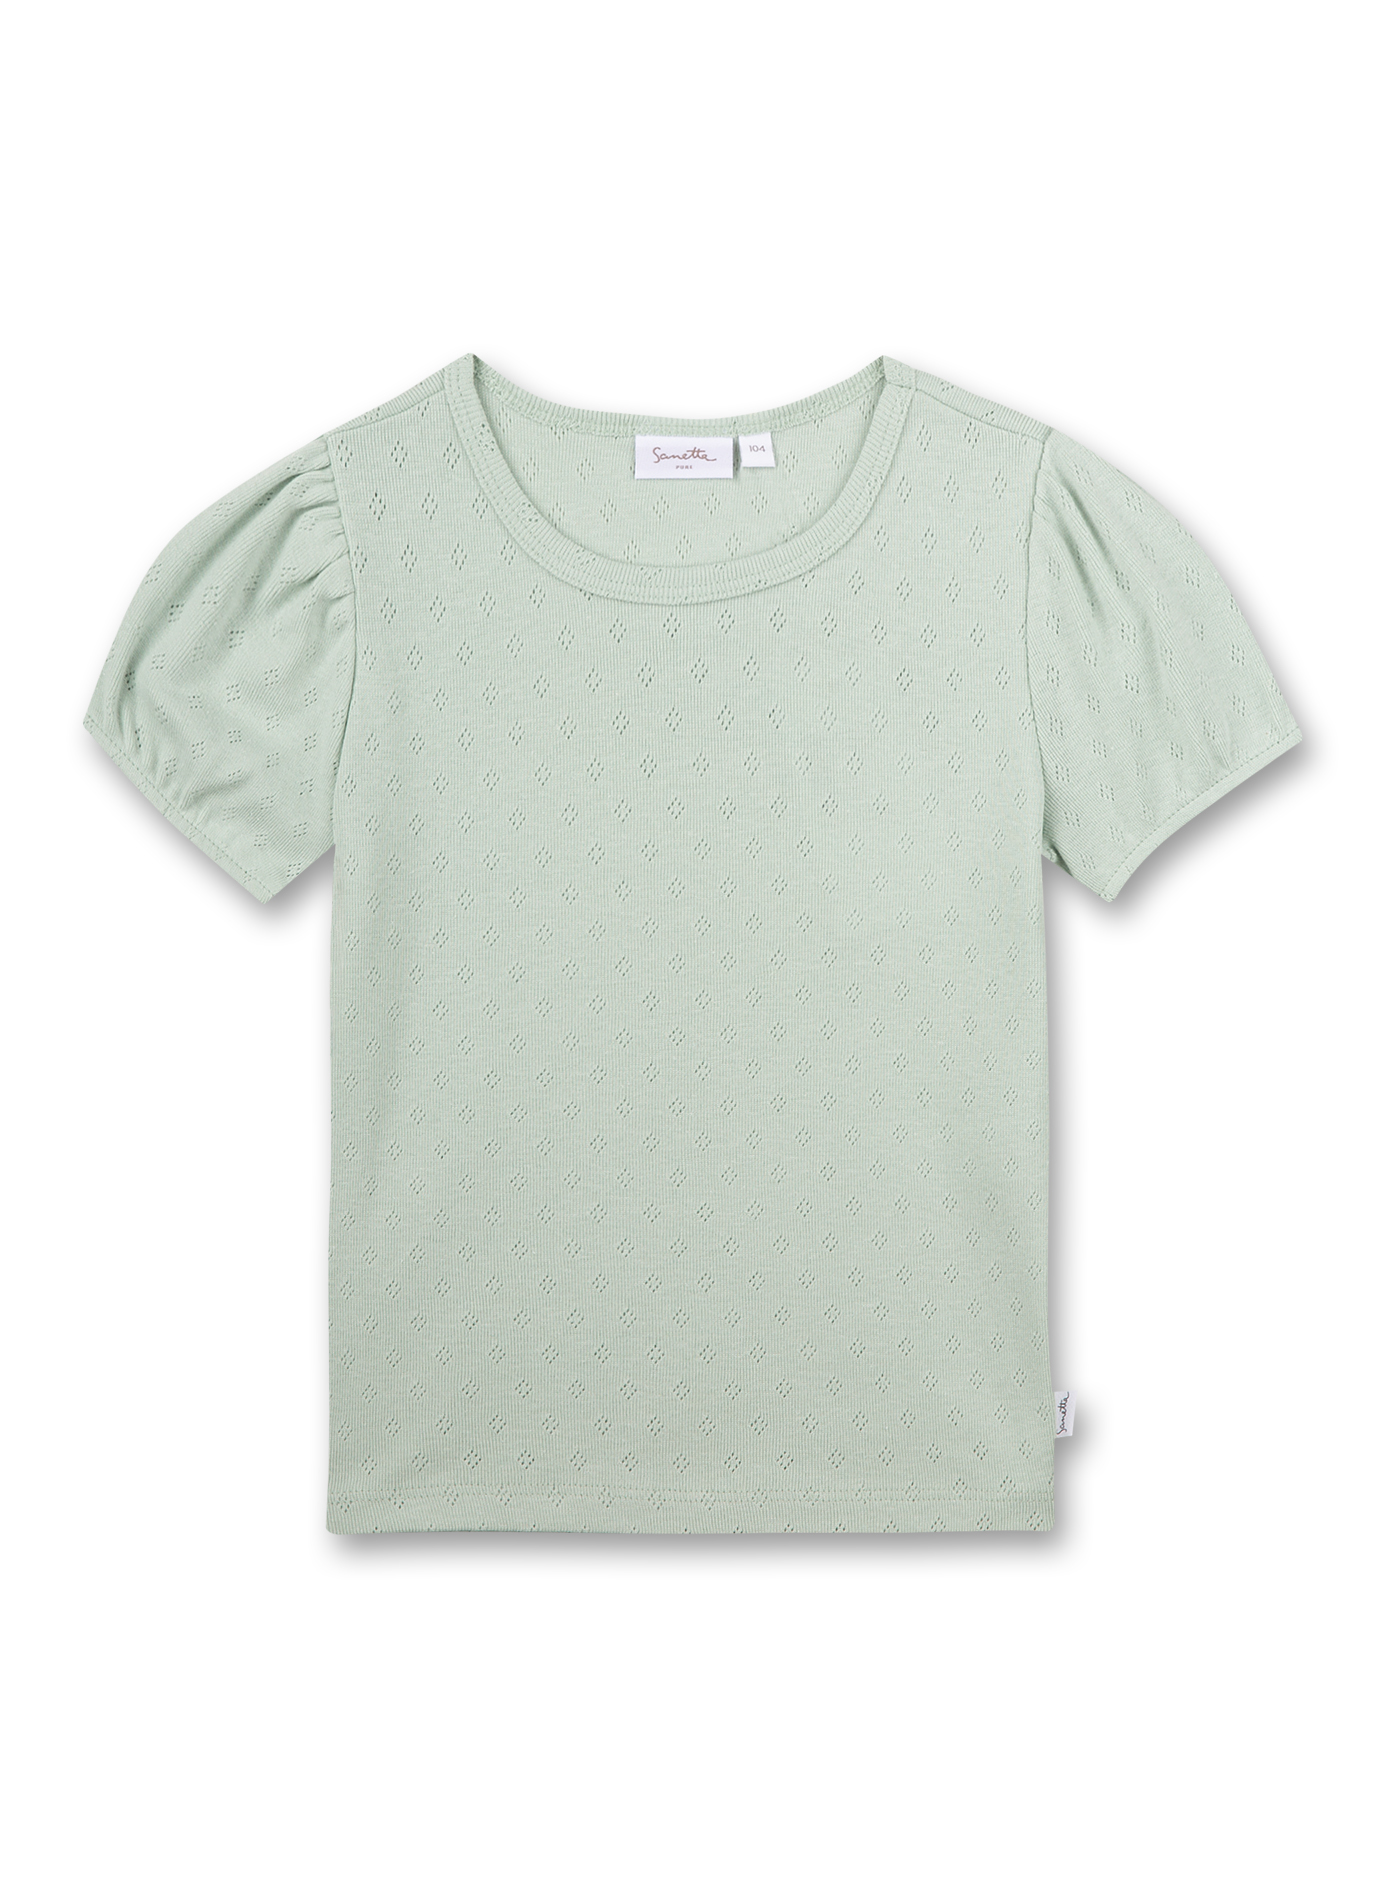 Mädchen T-Shirt Grün